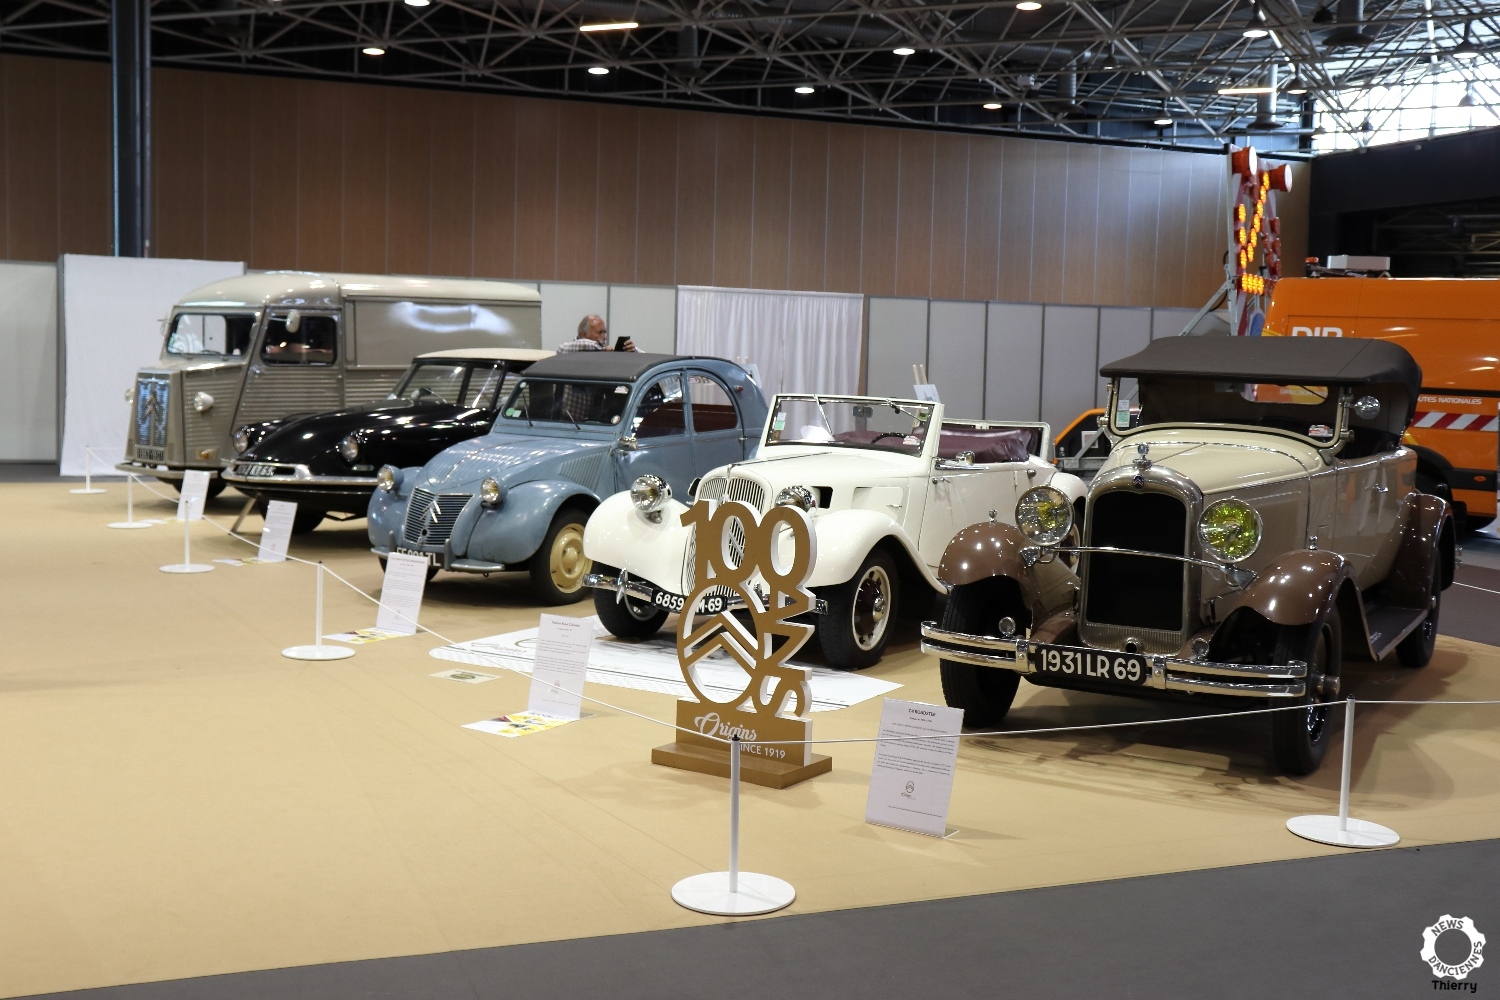 Salon Automobile de Lyon 2019 : de belles anciennes au milieu des modernes